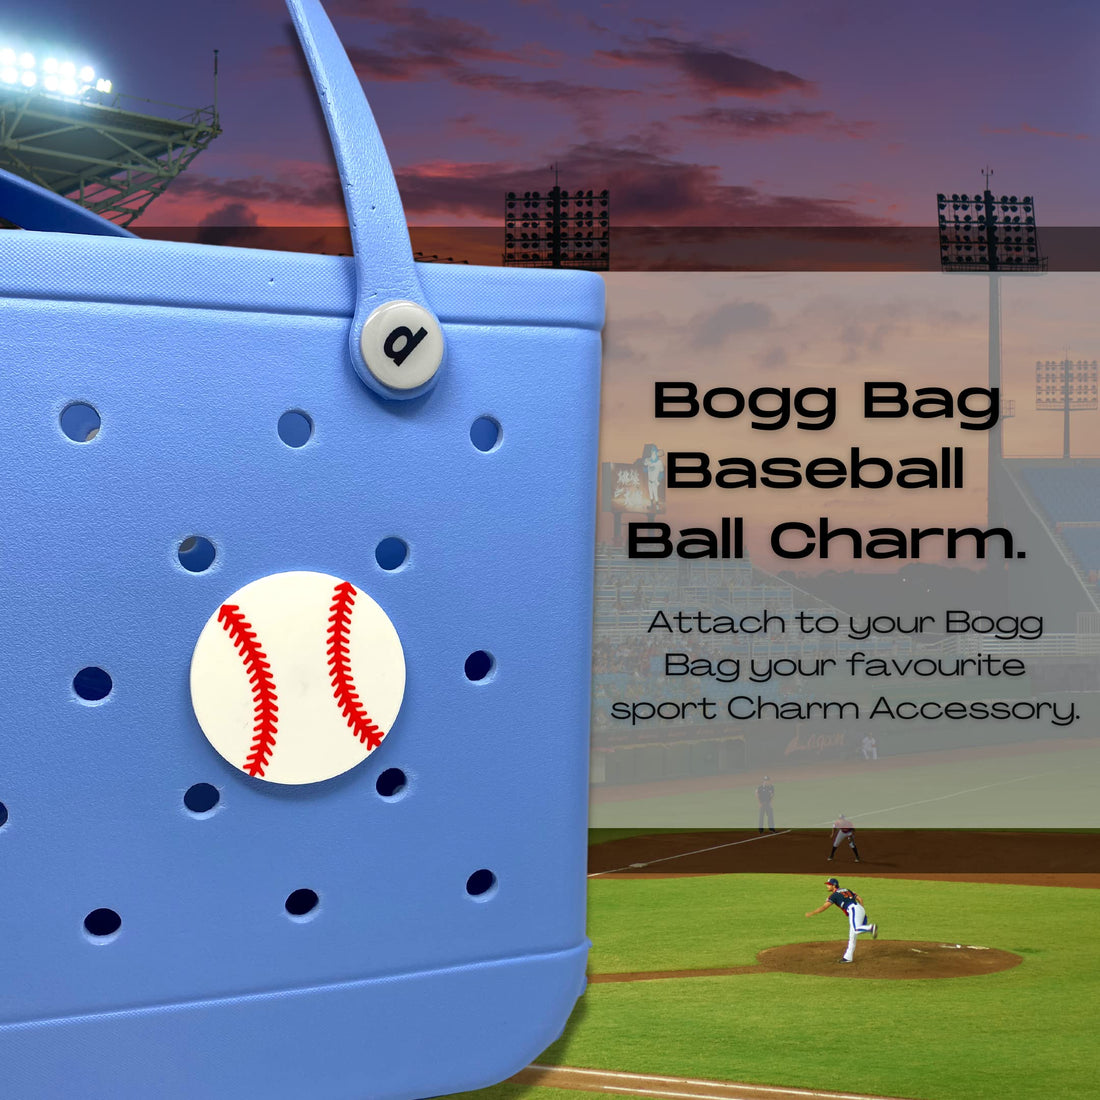 Bogg Bag Charms, Softball, Baseball